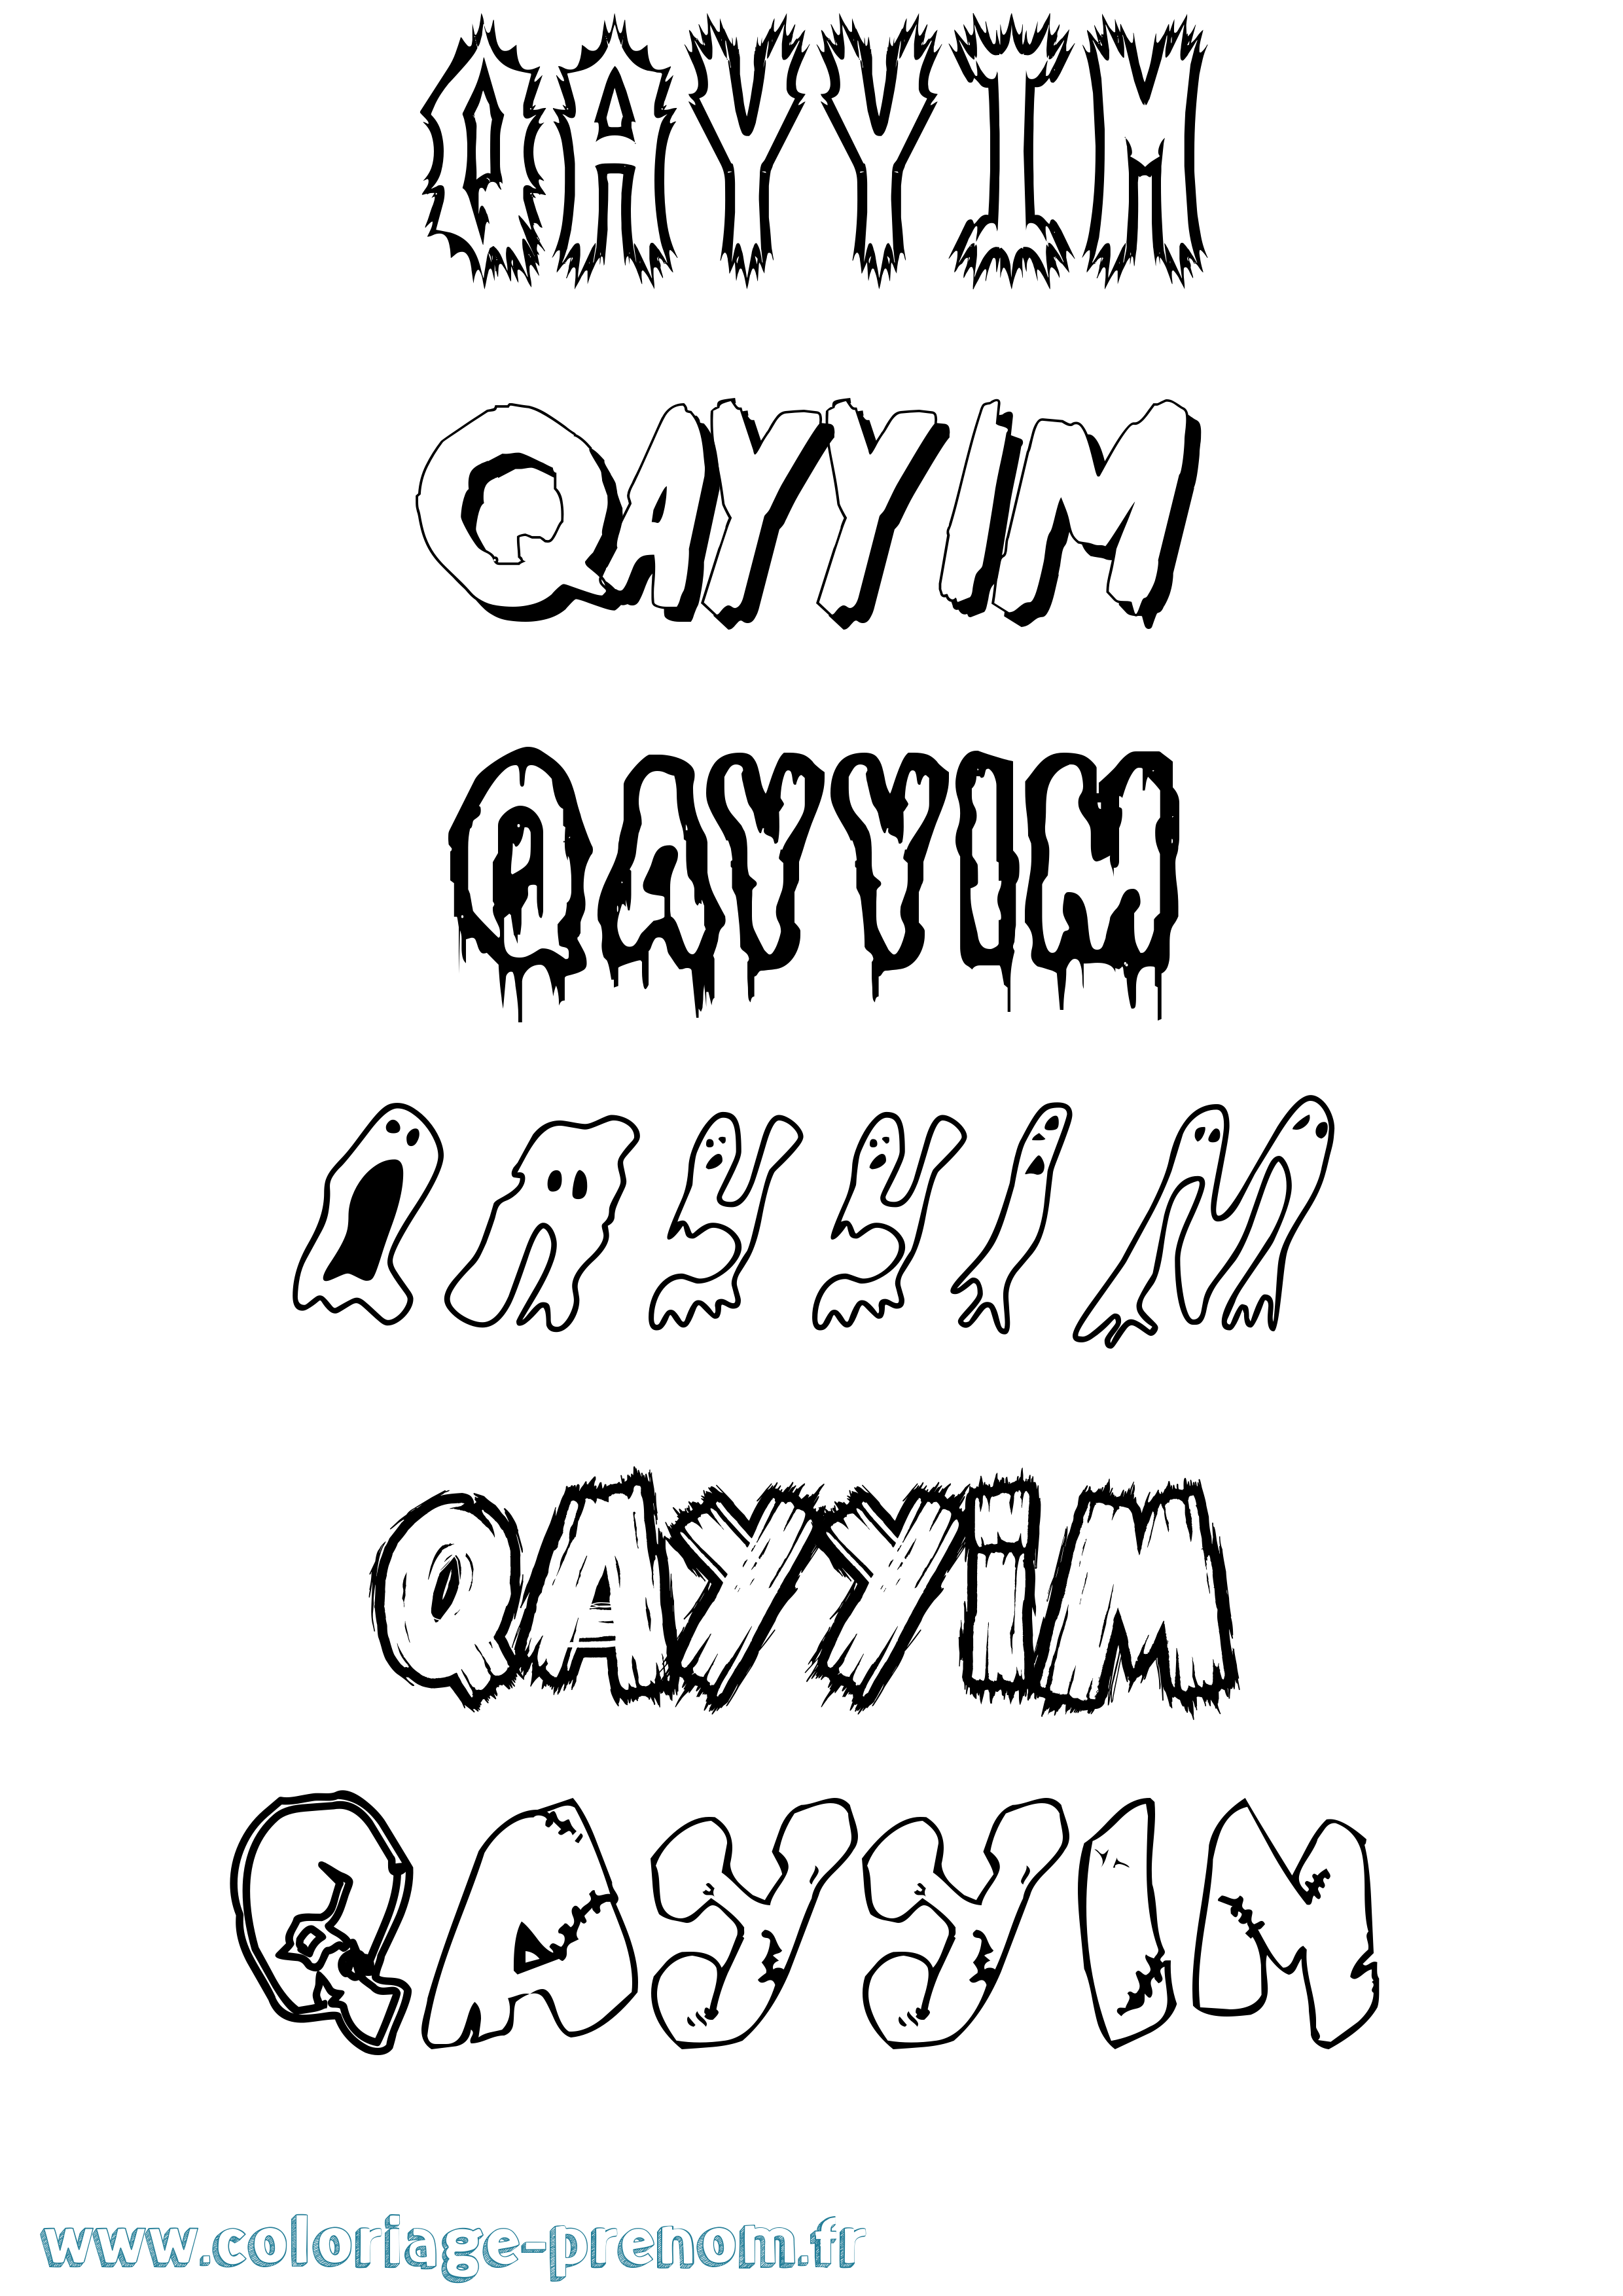 Coloriage prénom Qayyim Frisson